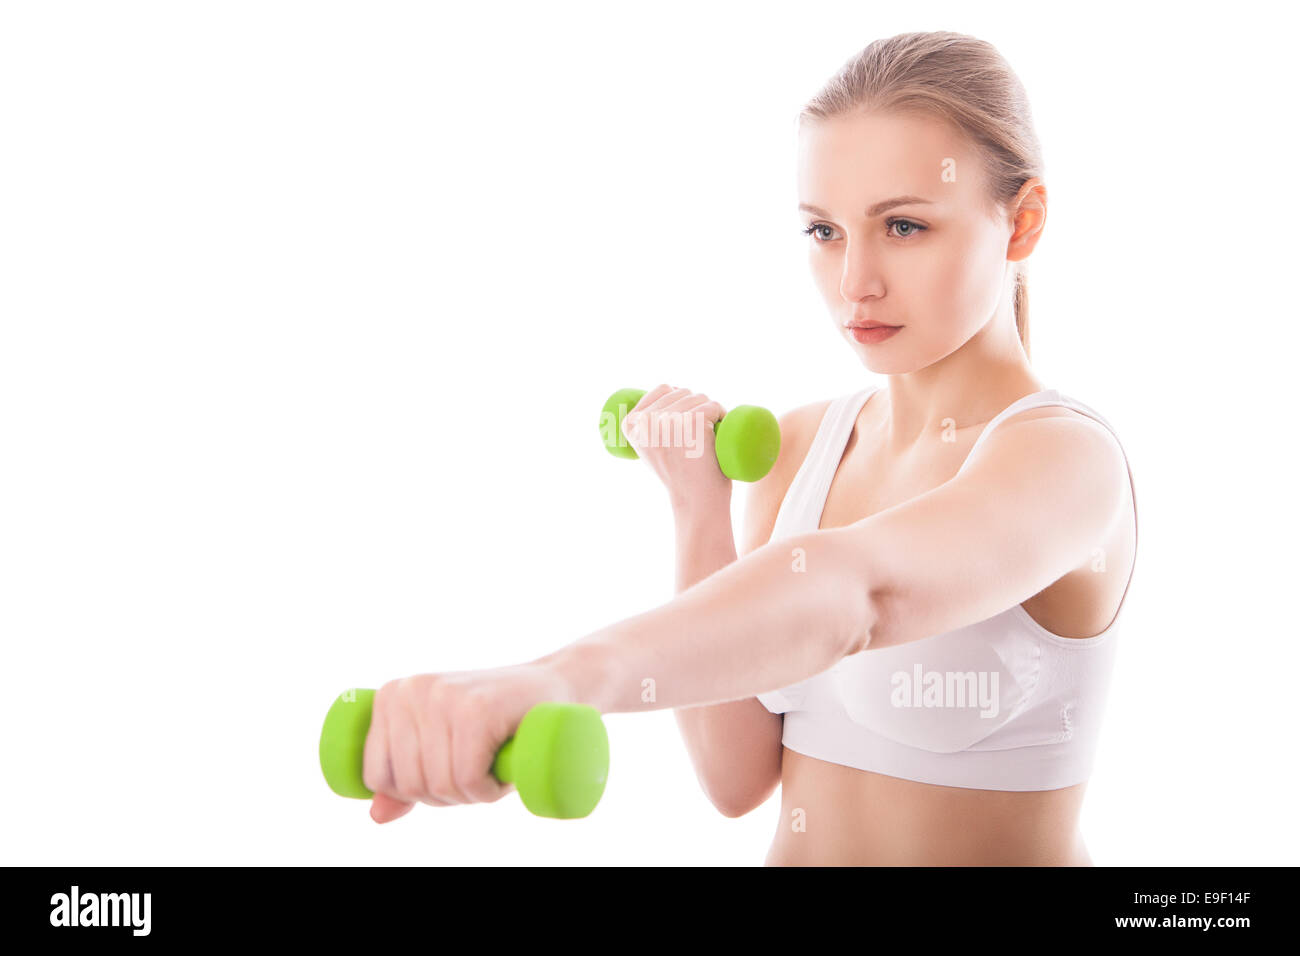 Smiling femme athlétique muscles jusqu'pompage avec haltères courtes sur fond blanc Banque D'Images